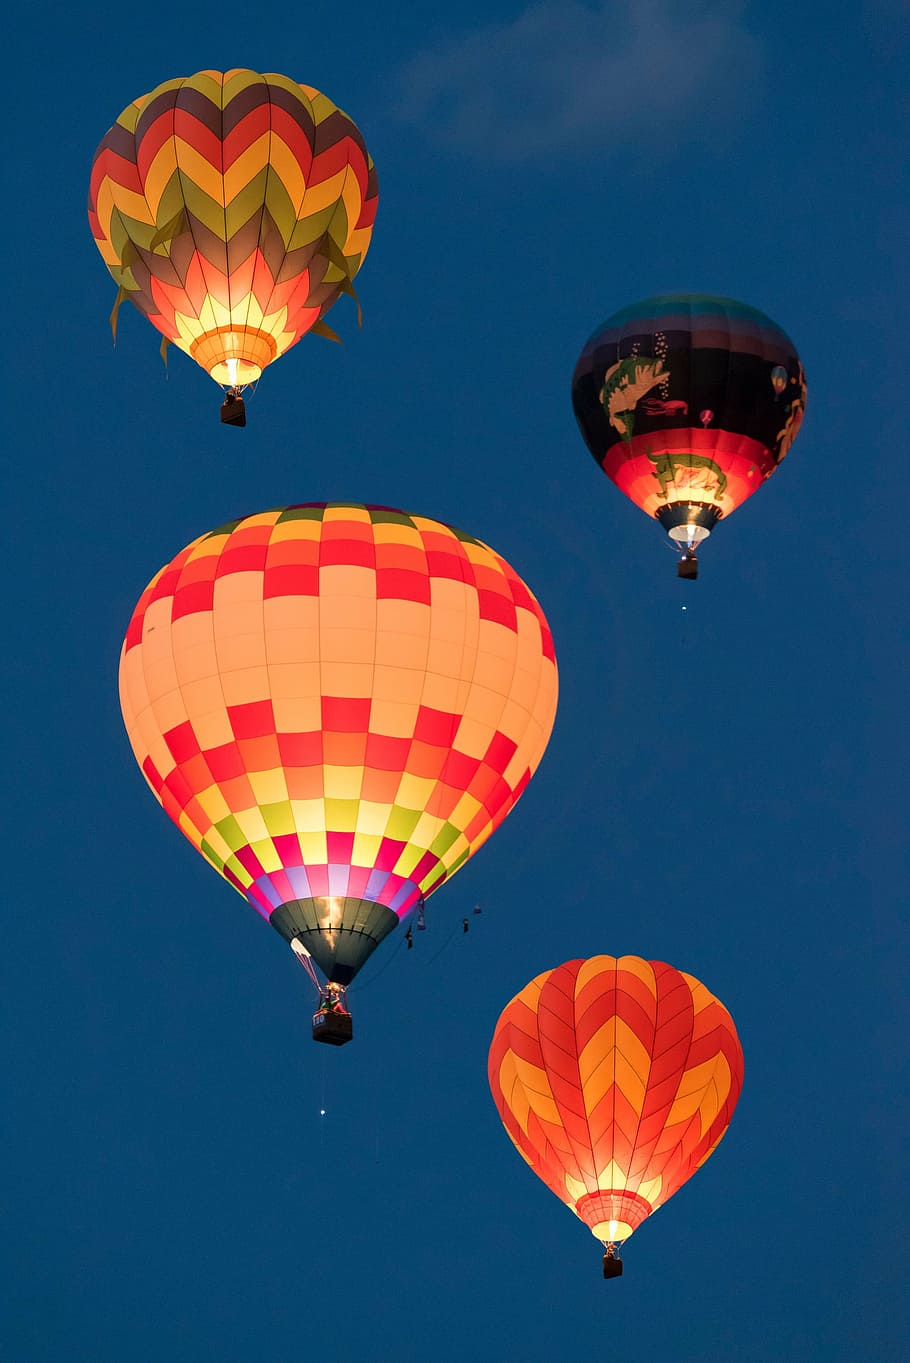 empat, balon udara beraneka warna, panas, terbang, langit, hitam, merah, oranye, udara, balon